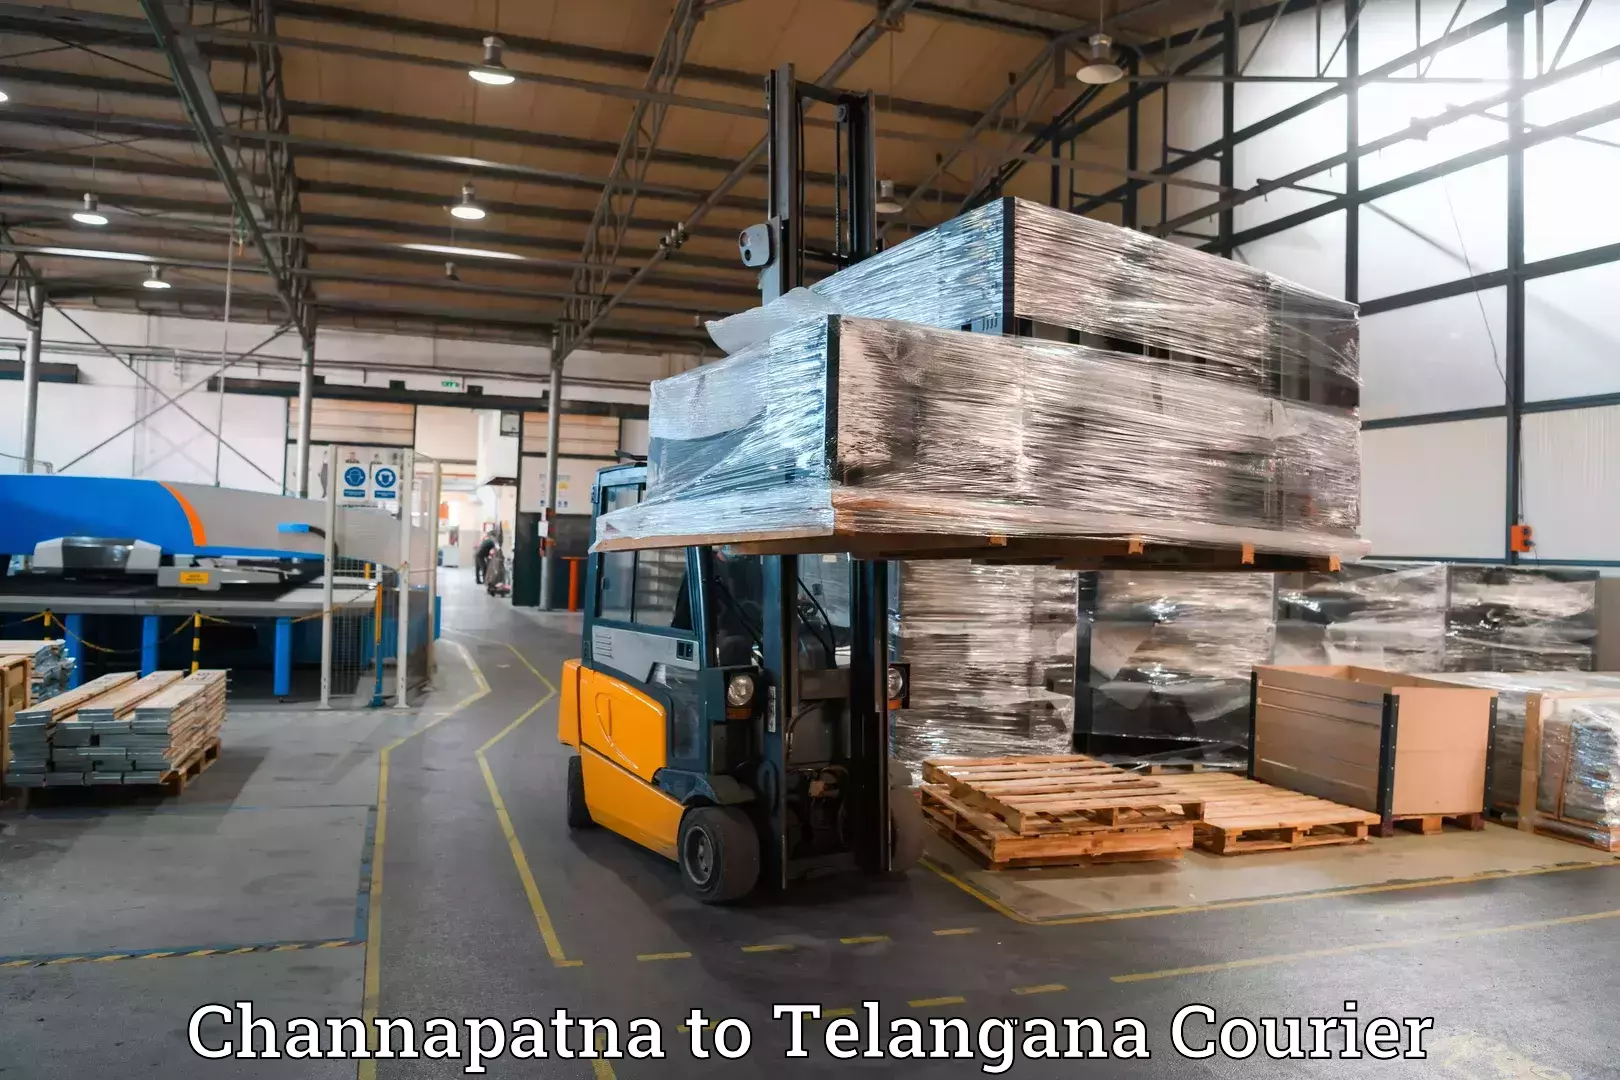 Luggage forwarding service in Channapatna to Yellandu